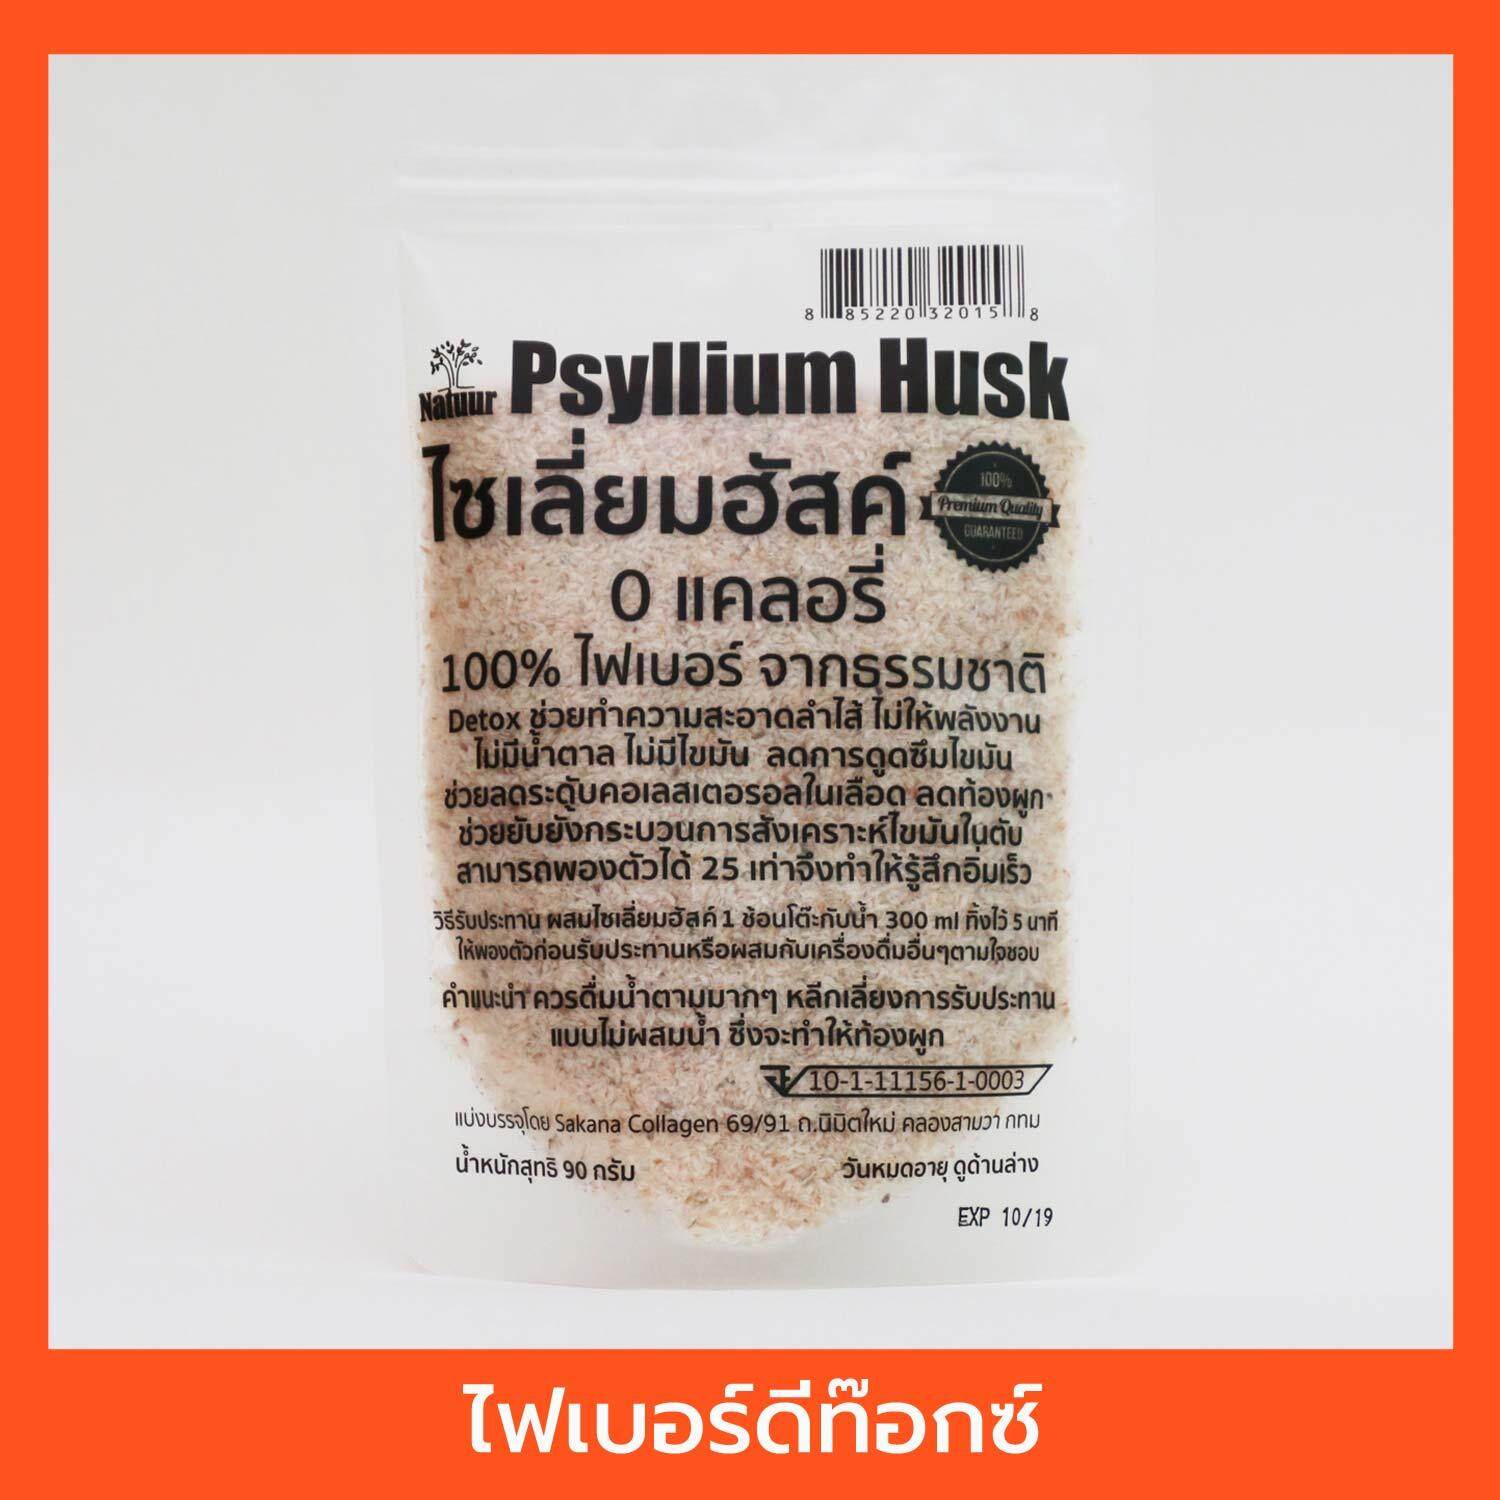 ใยอาหารไซเลี่ยมฮัสค์ ไฟเบอร์ ดีท็อกซ์ Psyllium Husk - Natuur Sakana